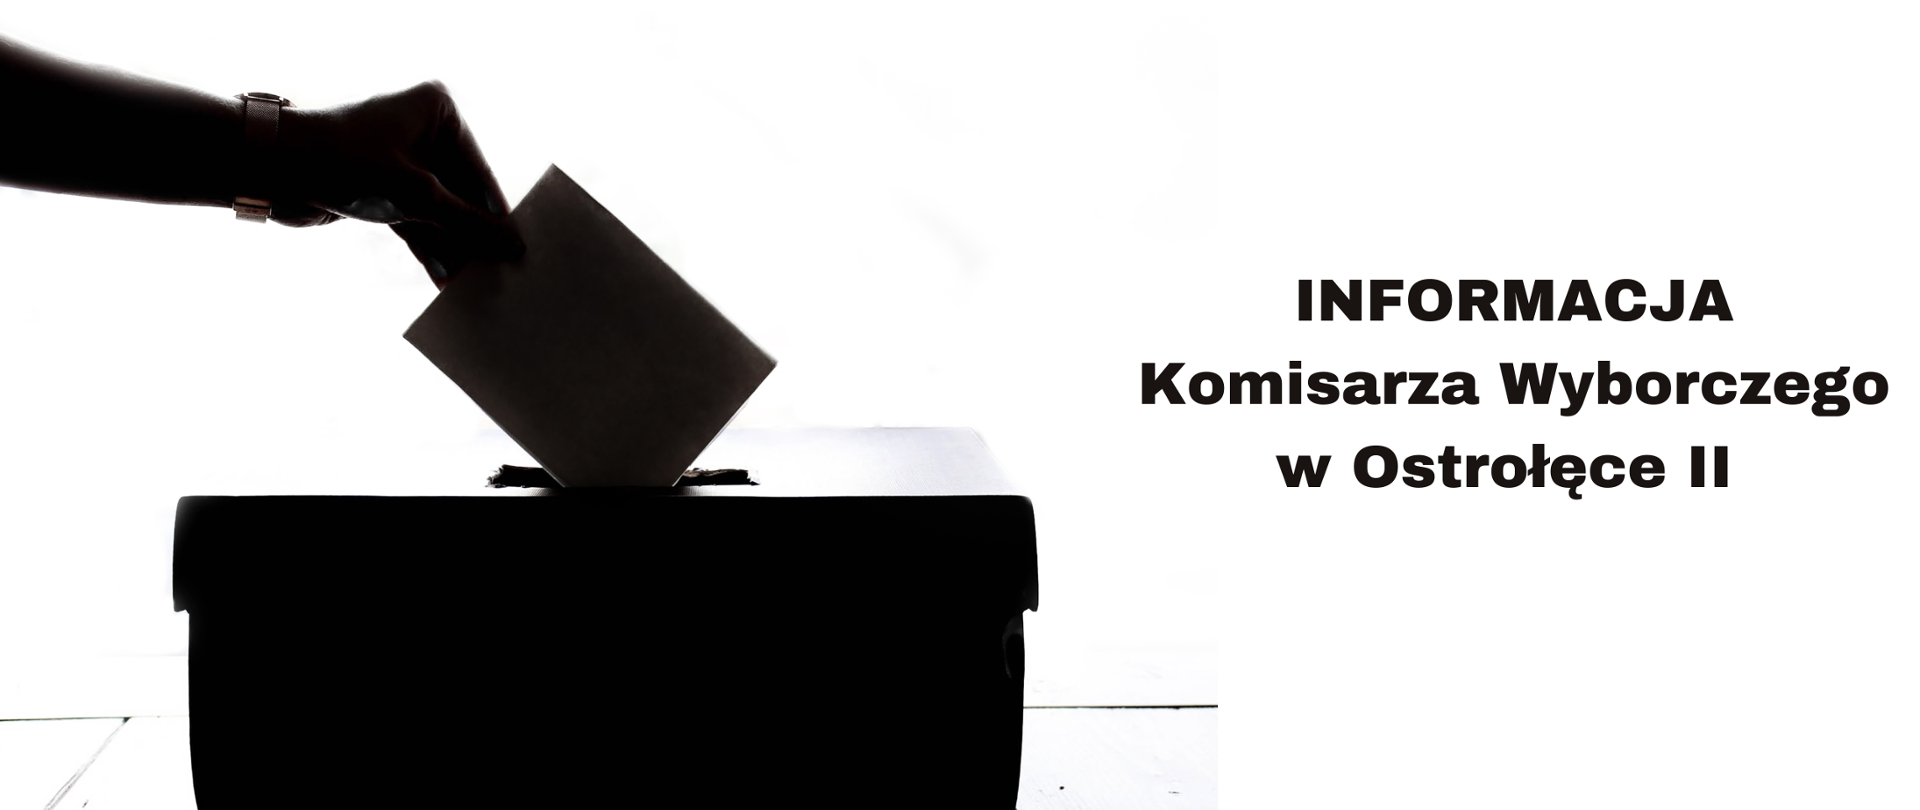 Dłoń wrzucająca kartę do urny, obok tekst: Informacja Komisarza Wyborczego w Ostrołęce II